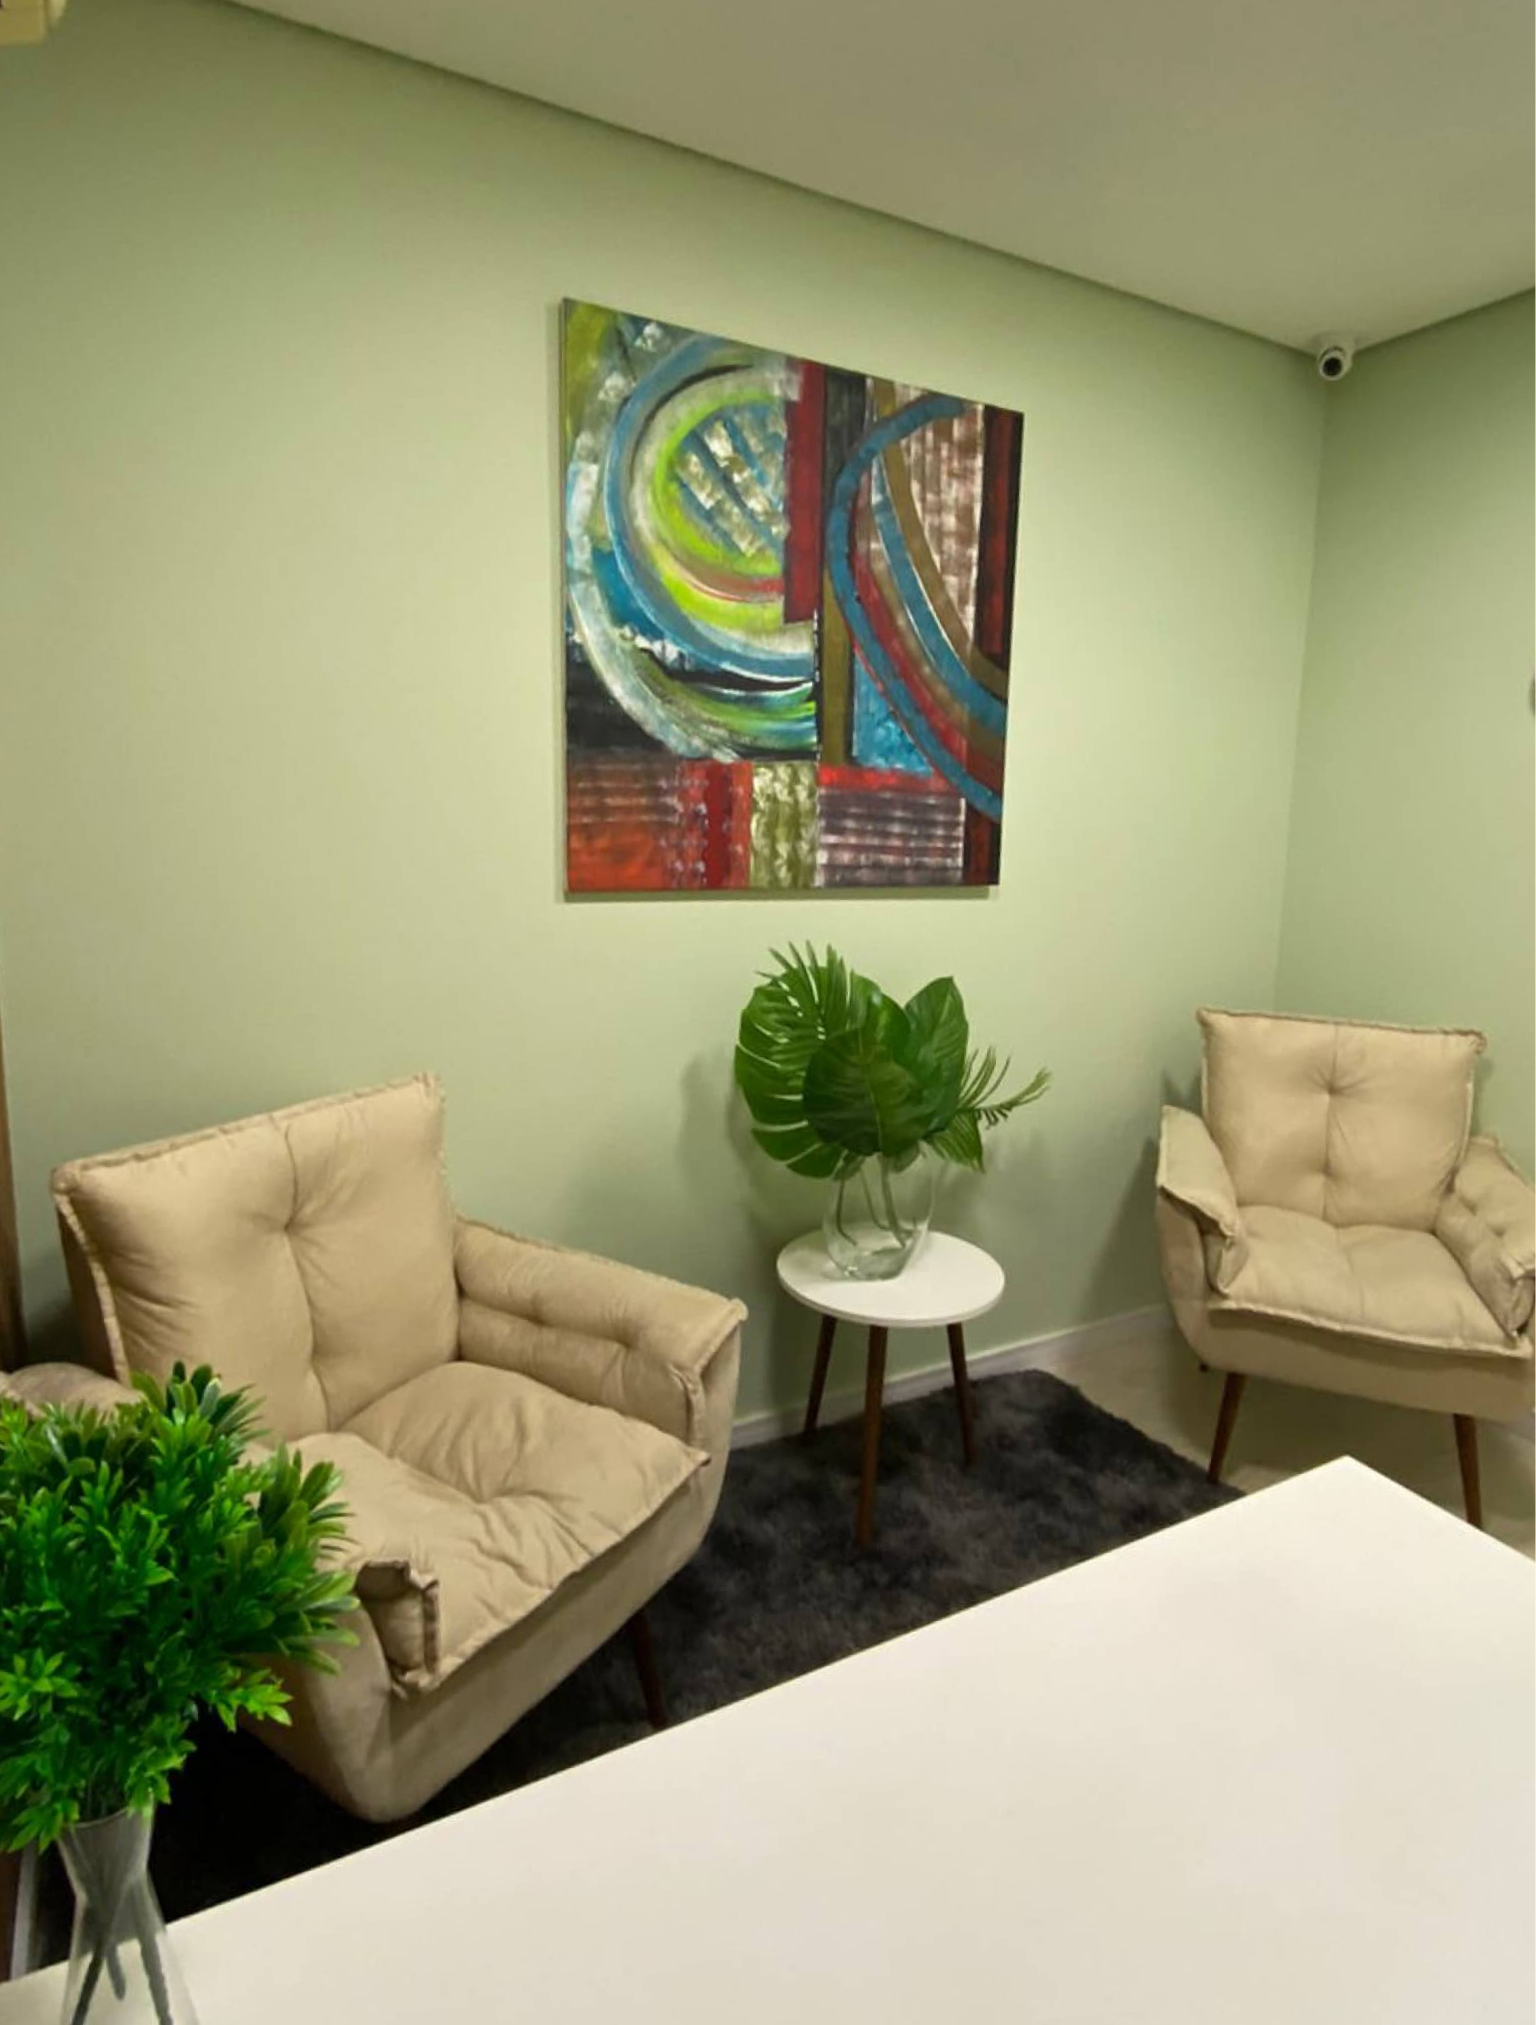 Sala com duas poltronas, plantas, tapete, mesa e um quadro decorativo.